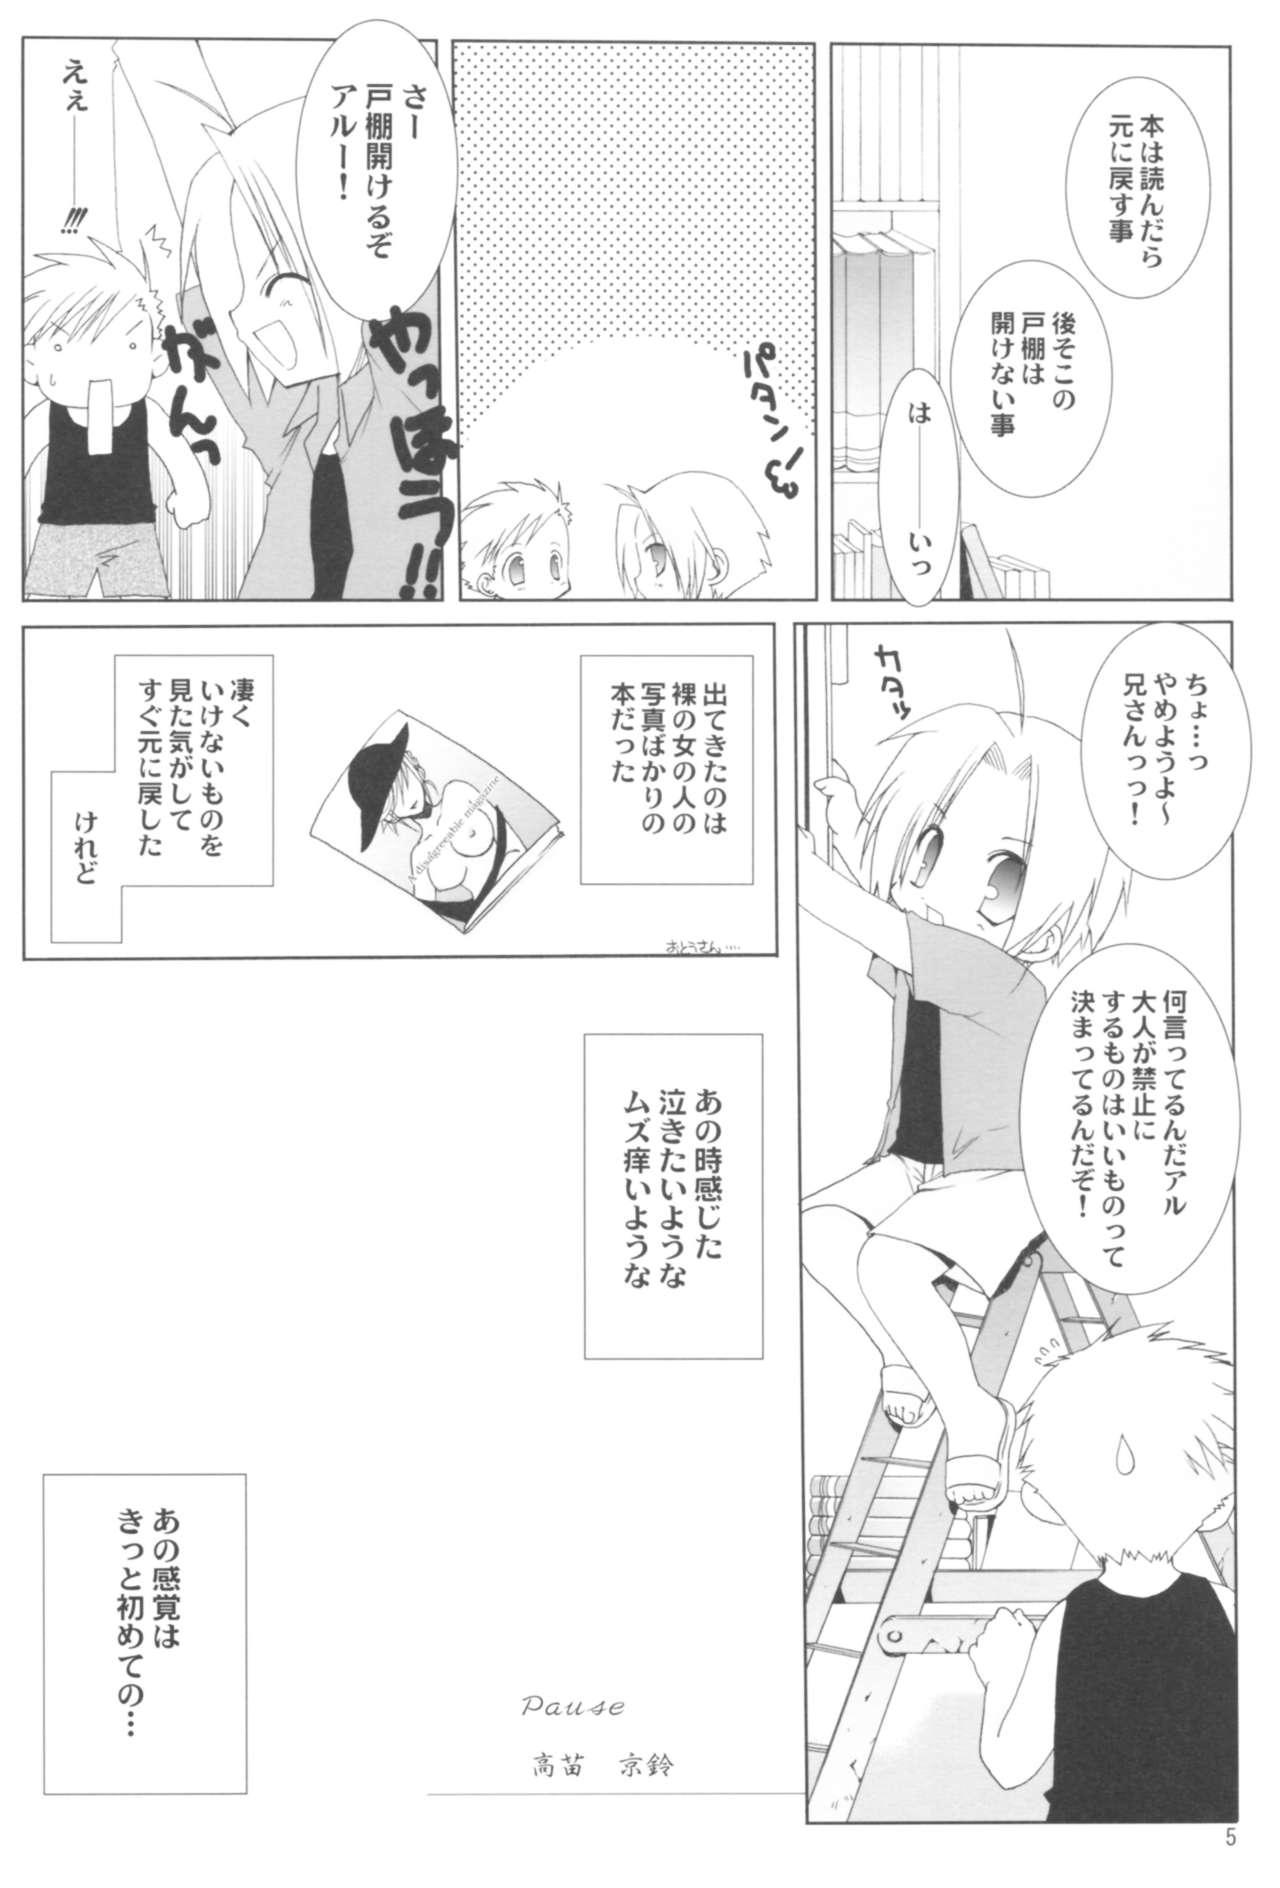 Face Sitting Naedoko Ikusei Kansatsu Kiroku - Bleach Fullmetal alchemist Higurashi no naku koro ni Hunk - Page 5